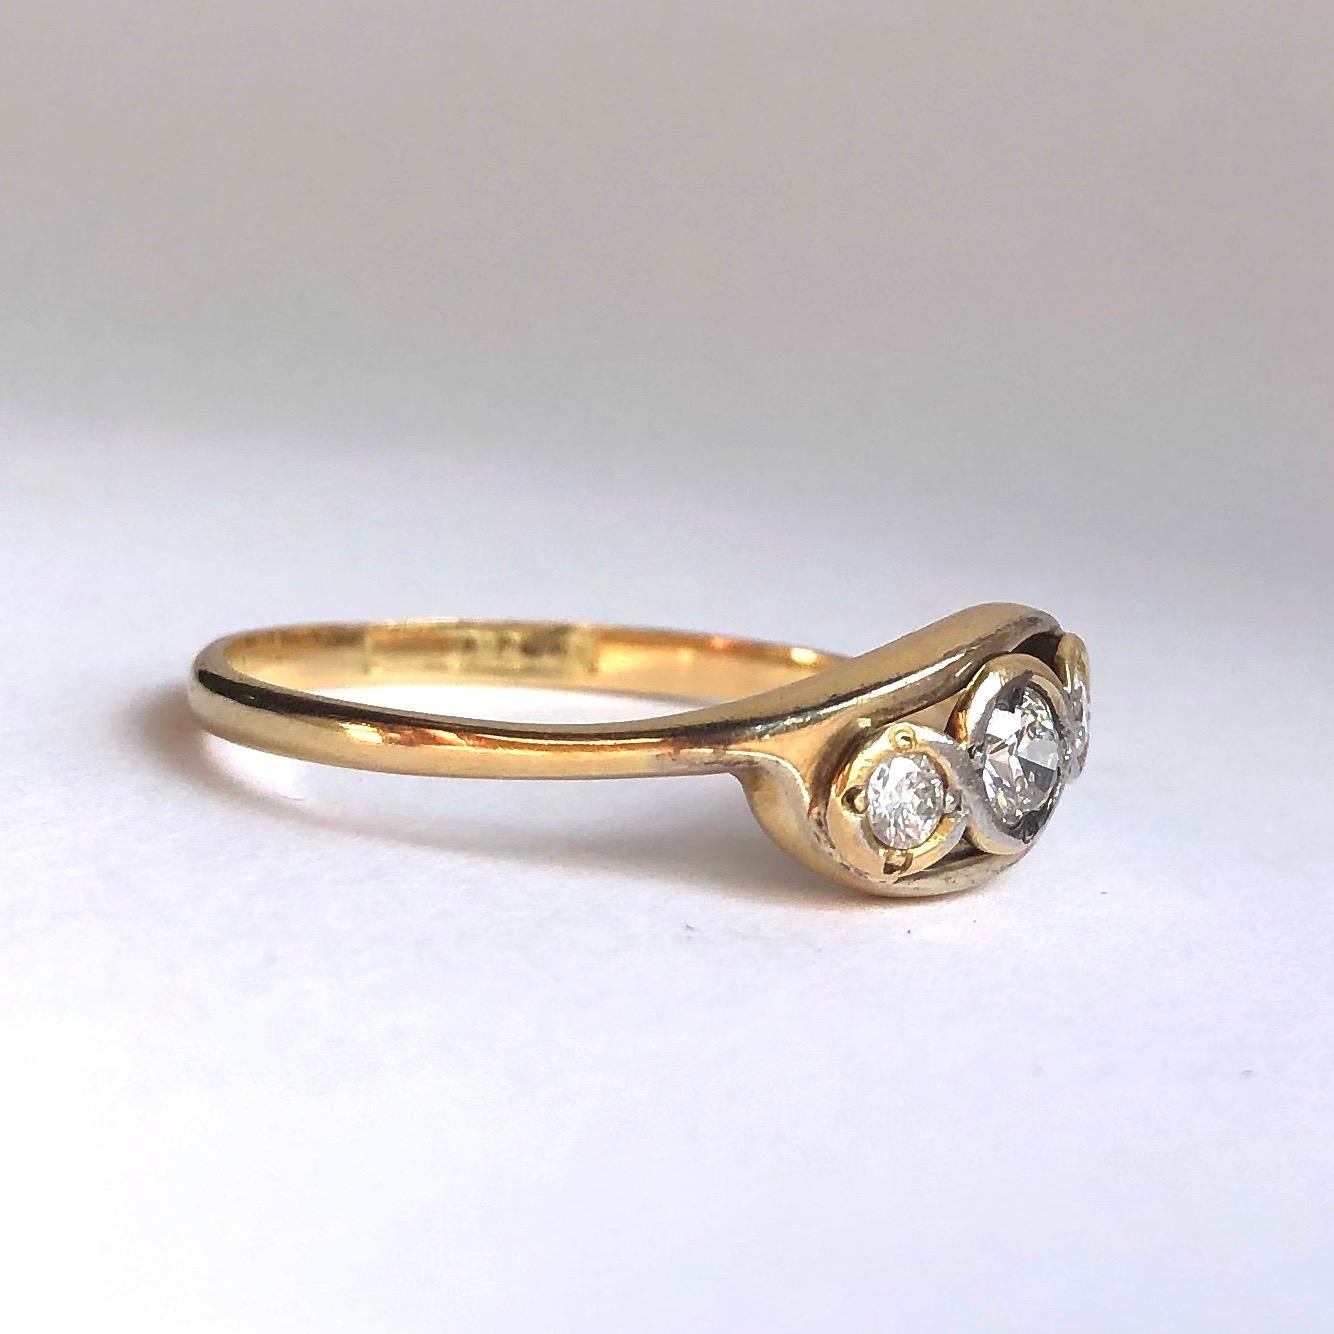 Die schimmernden Diamanten im alten europäischen Schliff sind bündig in das Kreuzband aus 18 Karat Gold eingefasst.

Ringgröße: W oder 11
Breite: 6 mm

Gewicht: 2,69g